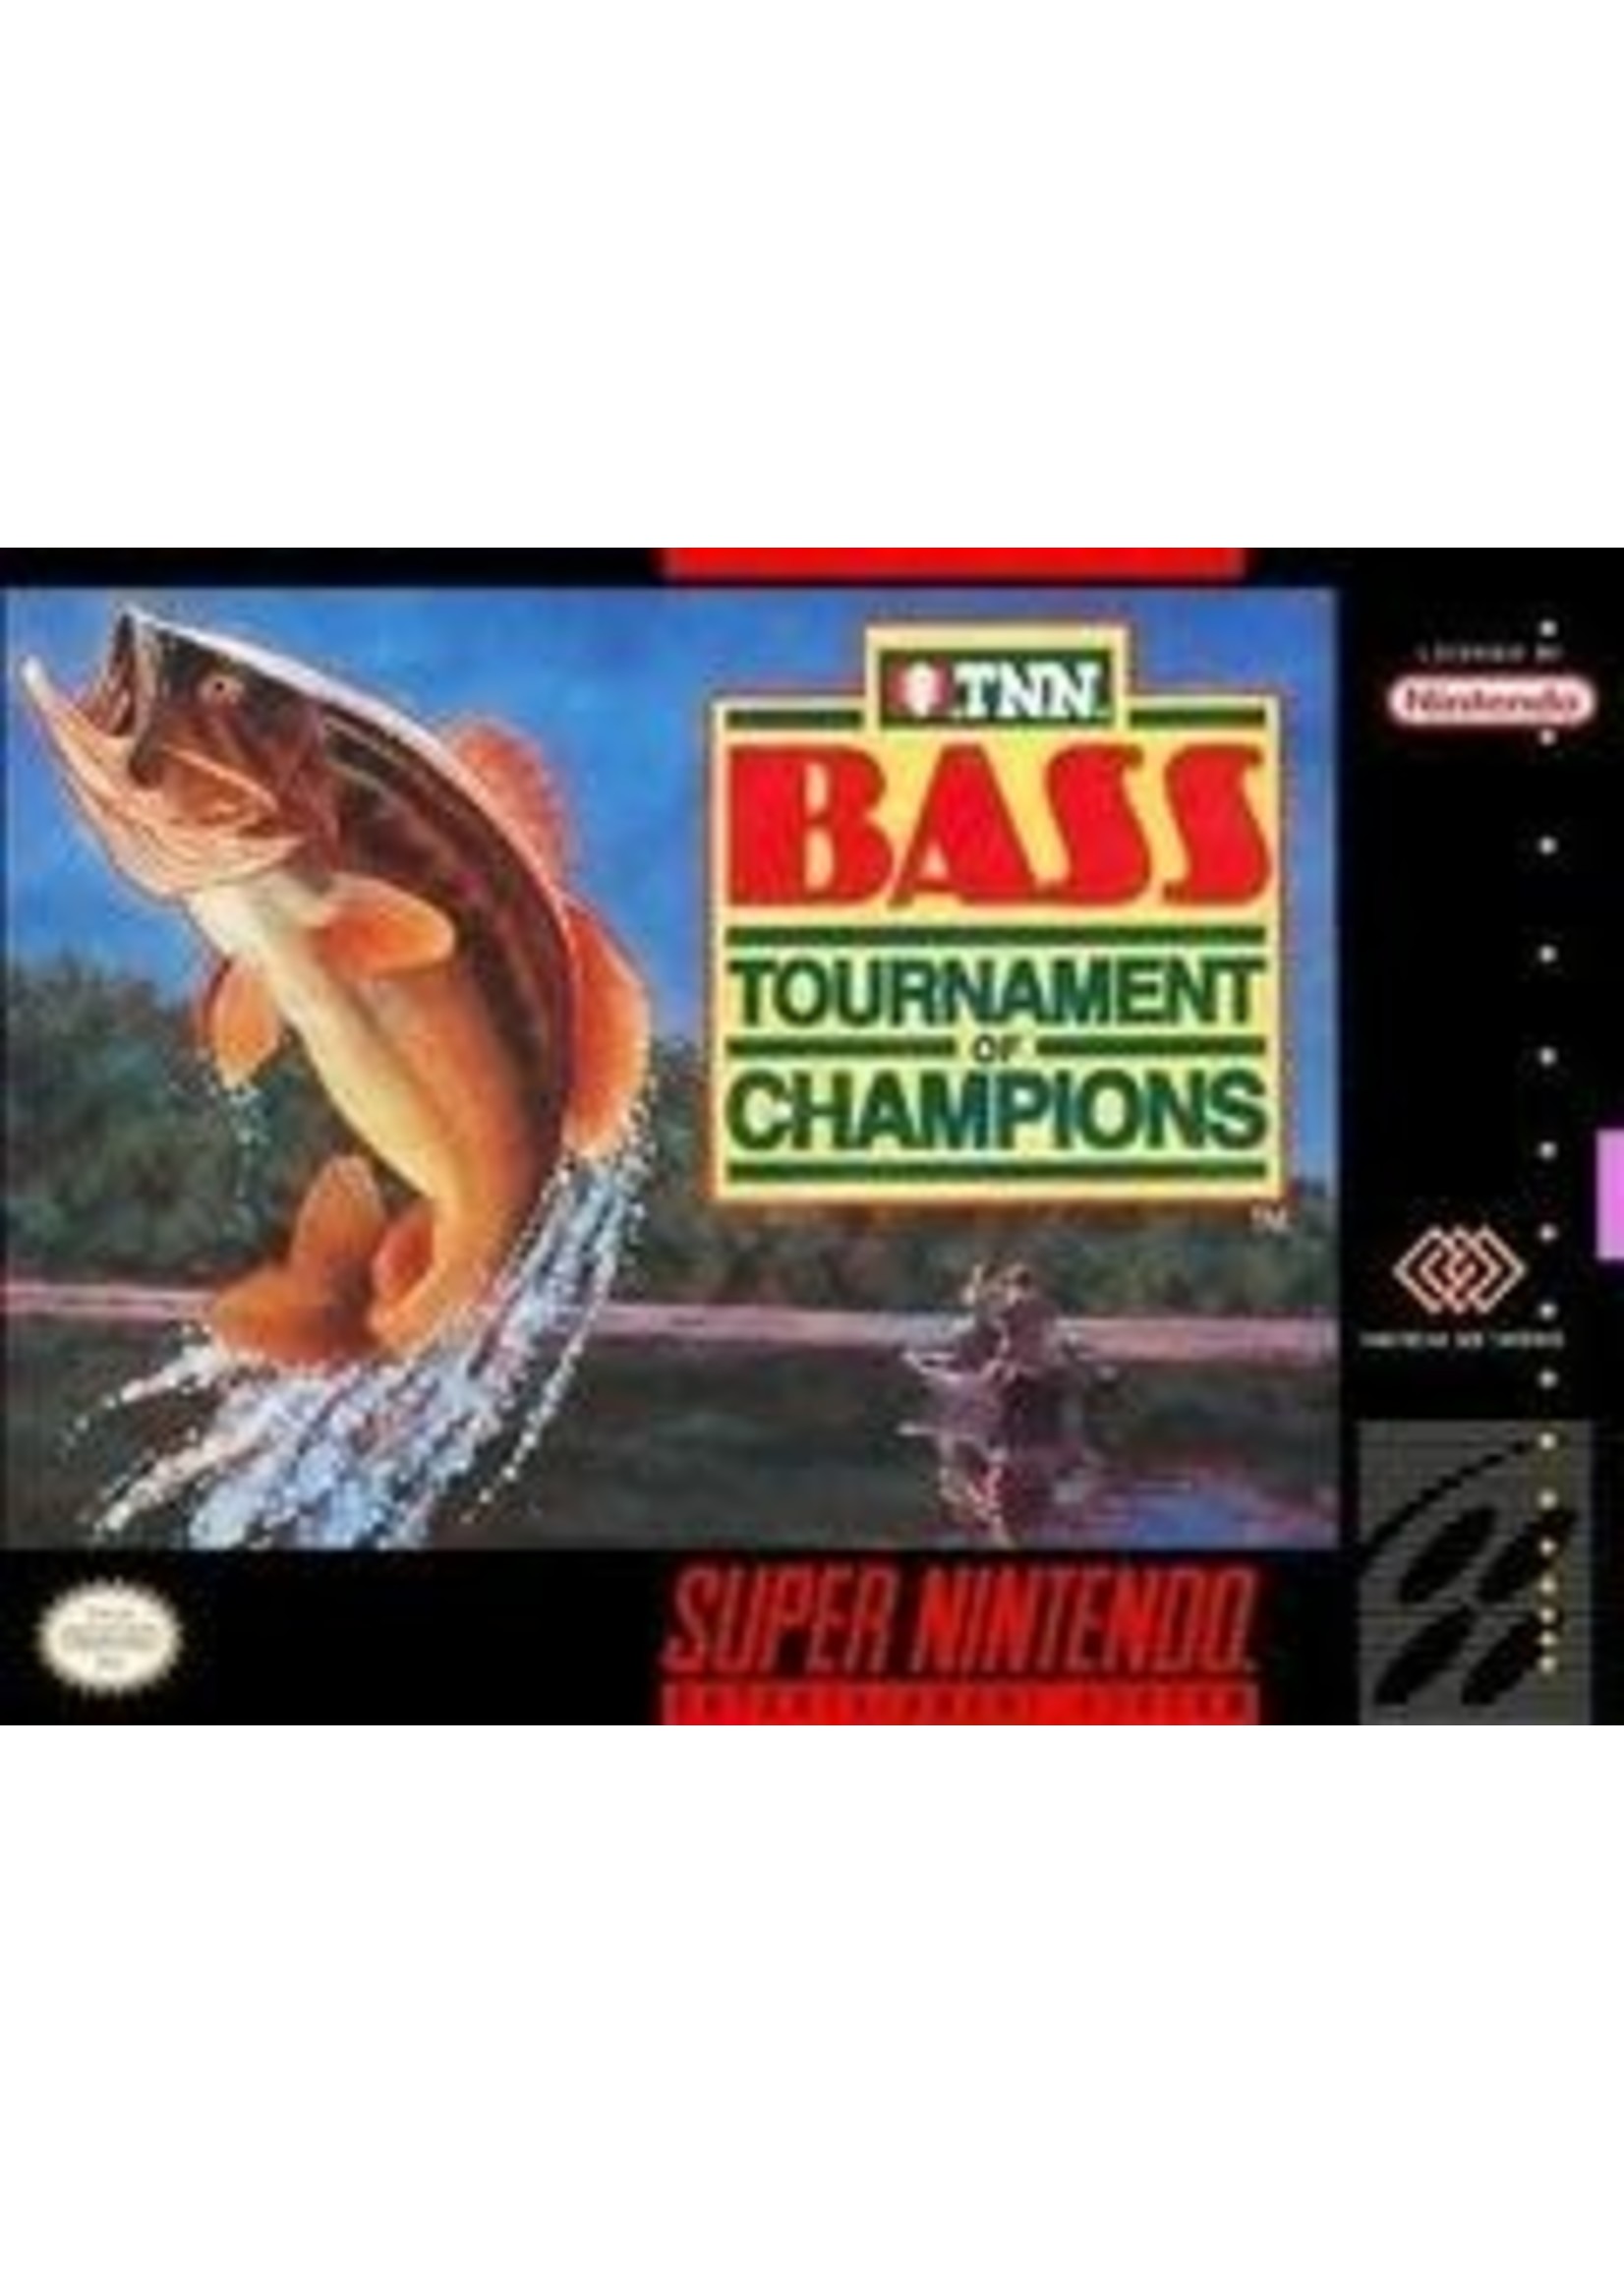 TNN Bass Tournament Of Champions Super Nintendo CARTE ONLY